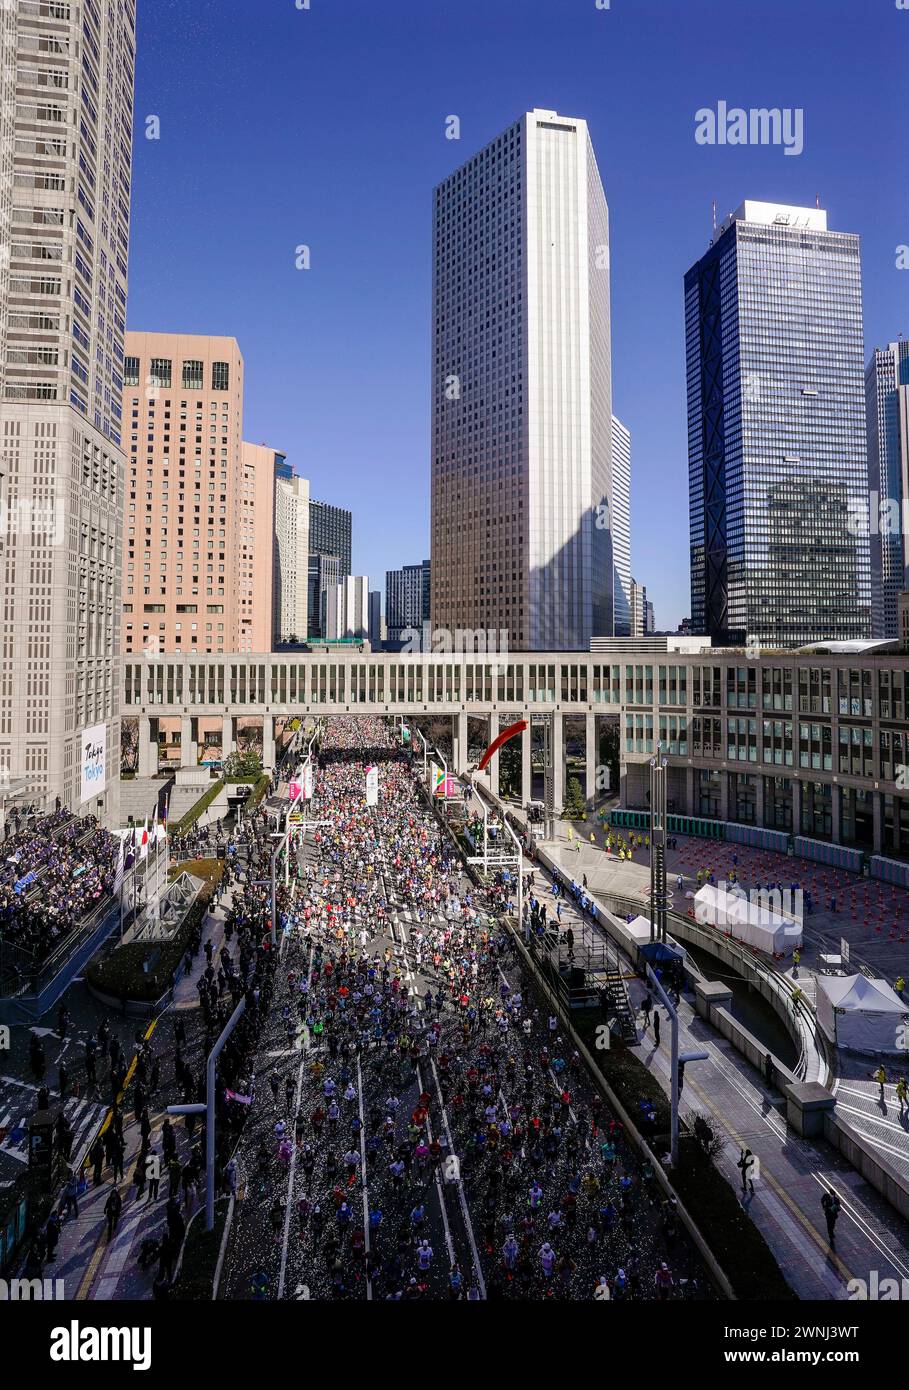 March 3, 2024, Tokyo, Tokyo, Japan Runners start at Tokyo Marathon